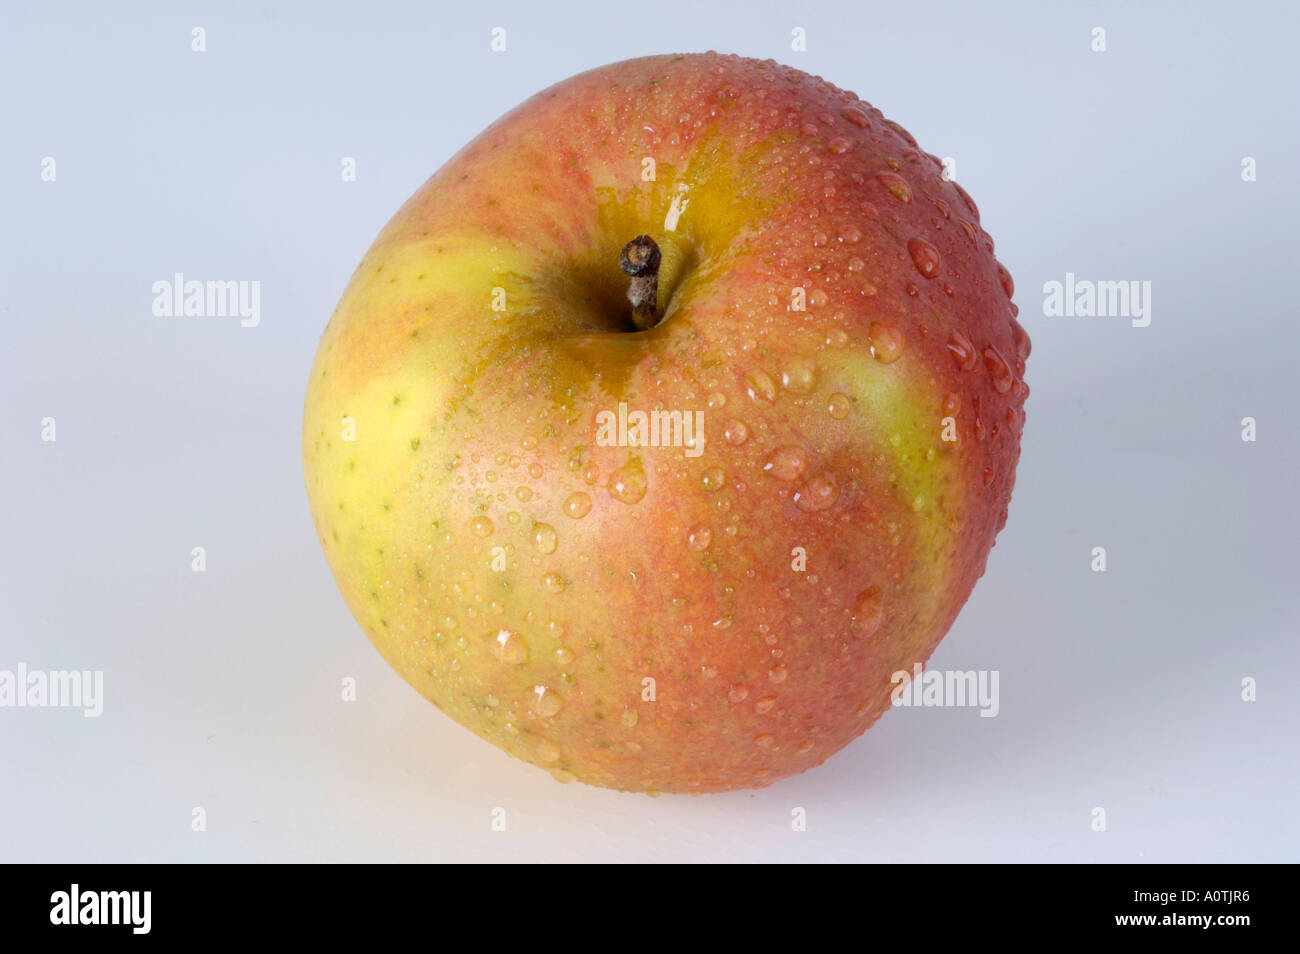 Apple / Berlepsch Stock Photo